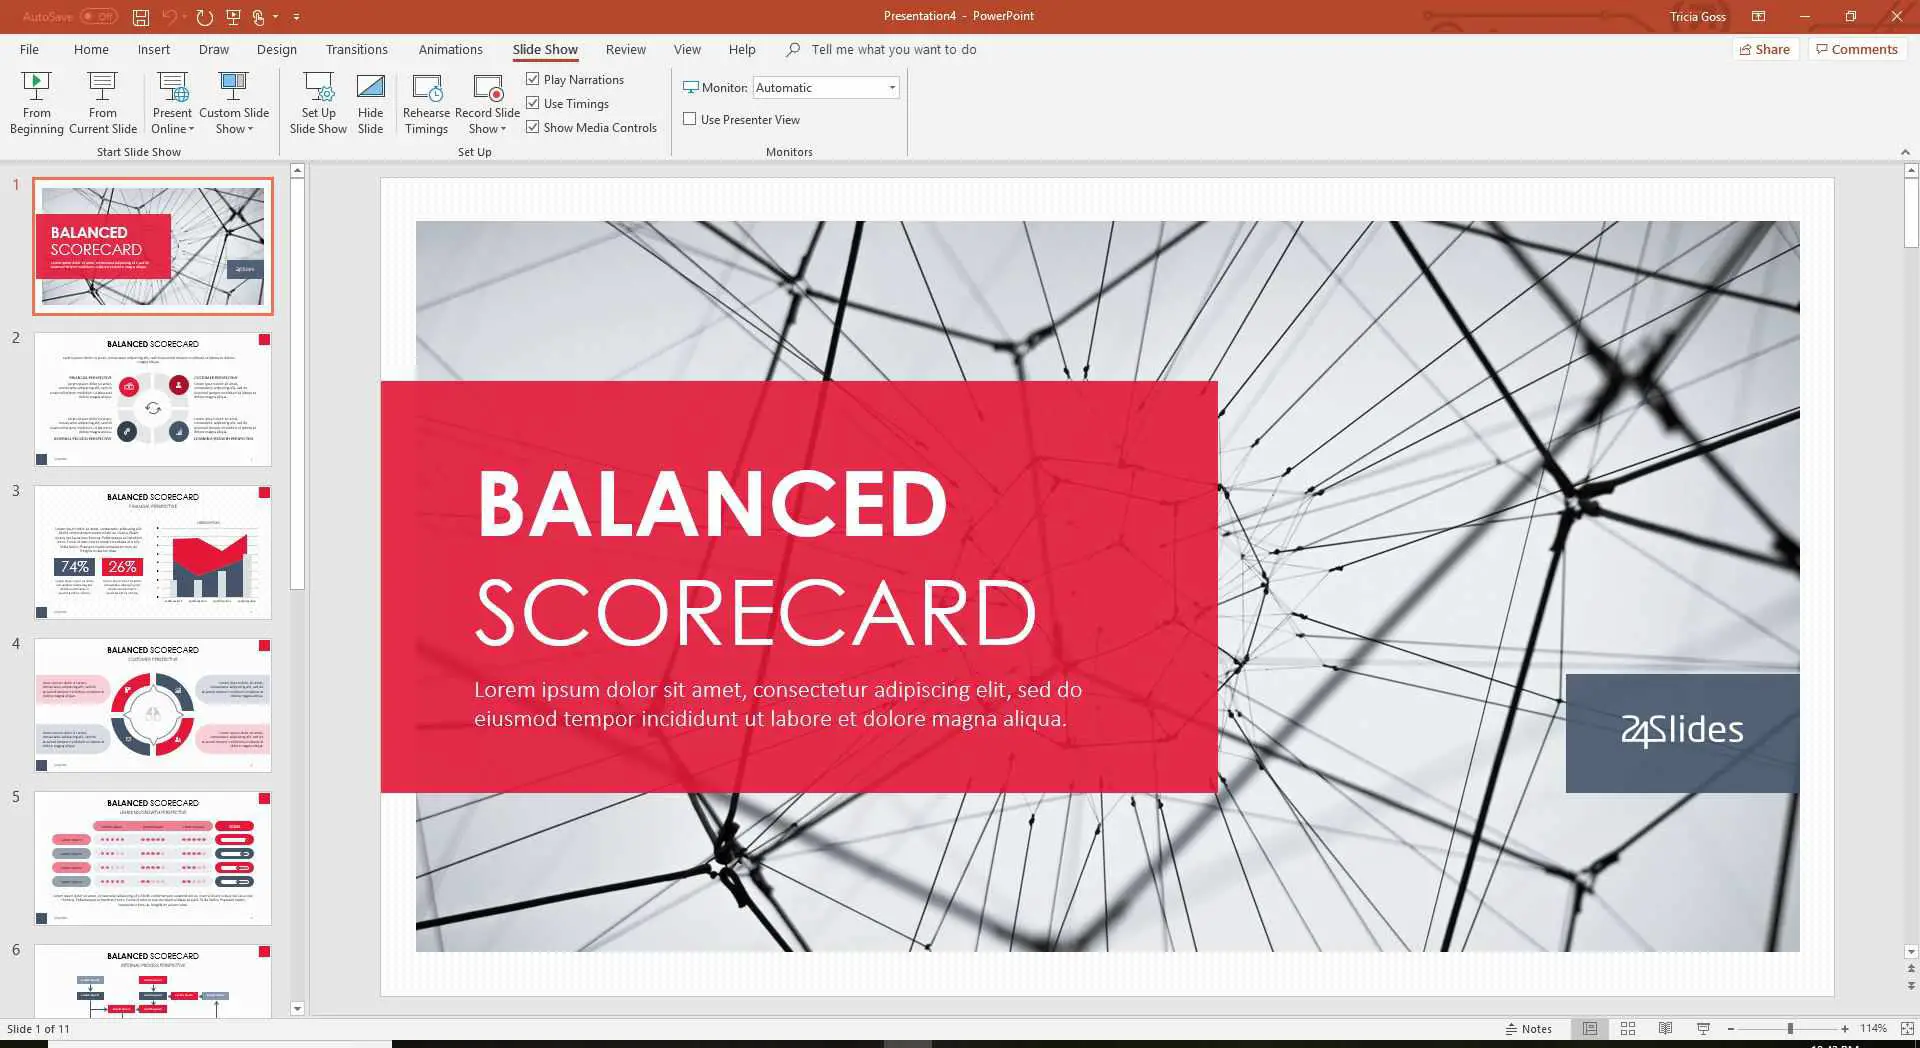 Captura de tela do modelo de Balanced Scorecard no PowerPoint